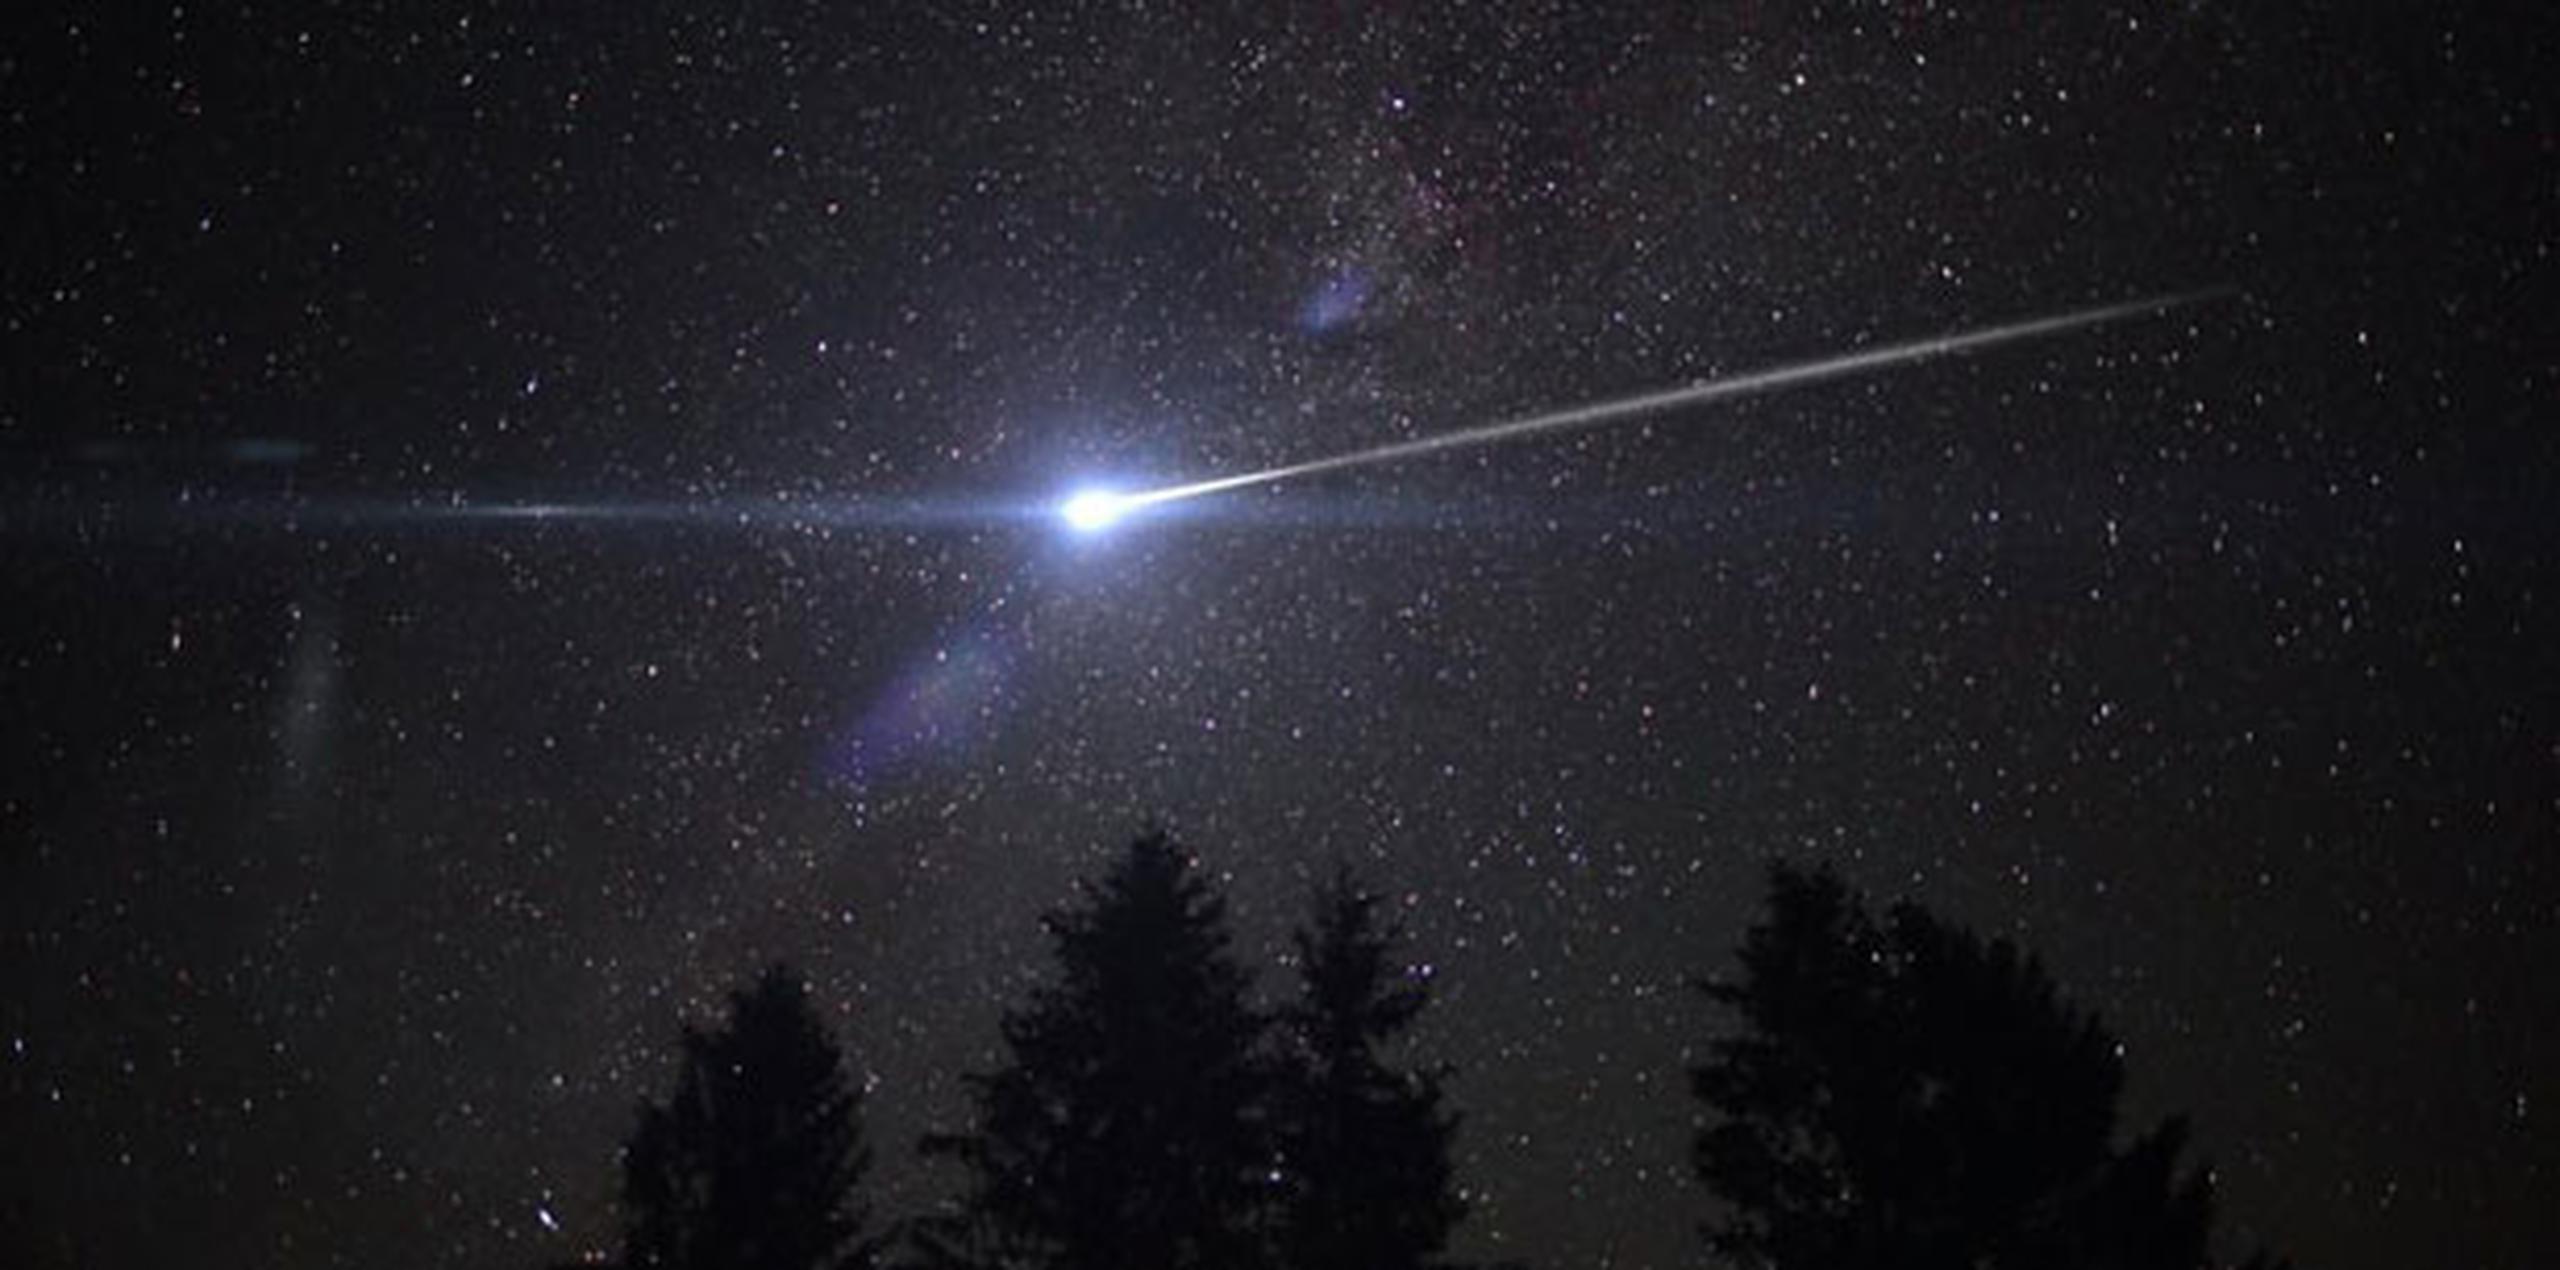 Entre la 1:00 a.m. y 3:00 a.m., de miércoles para jueves, se verán más meteoros. (Archivo)